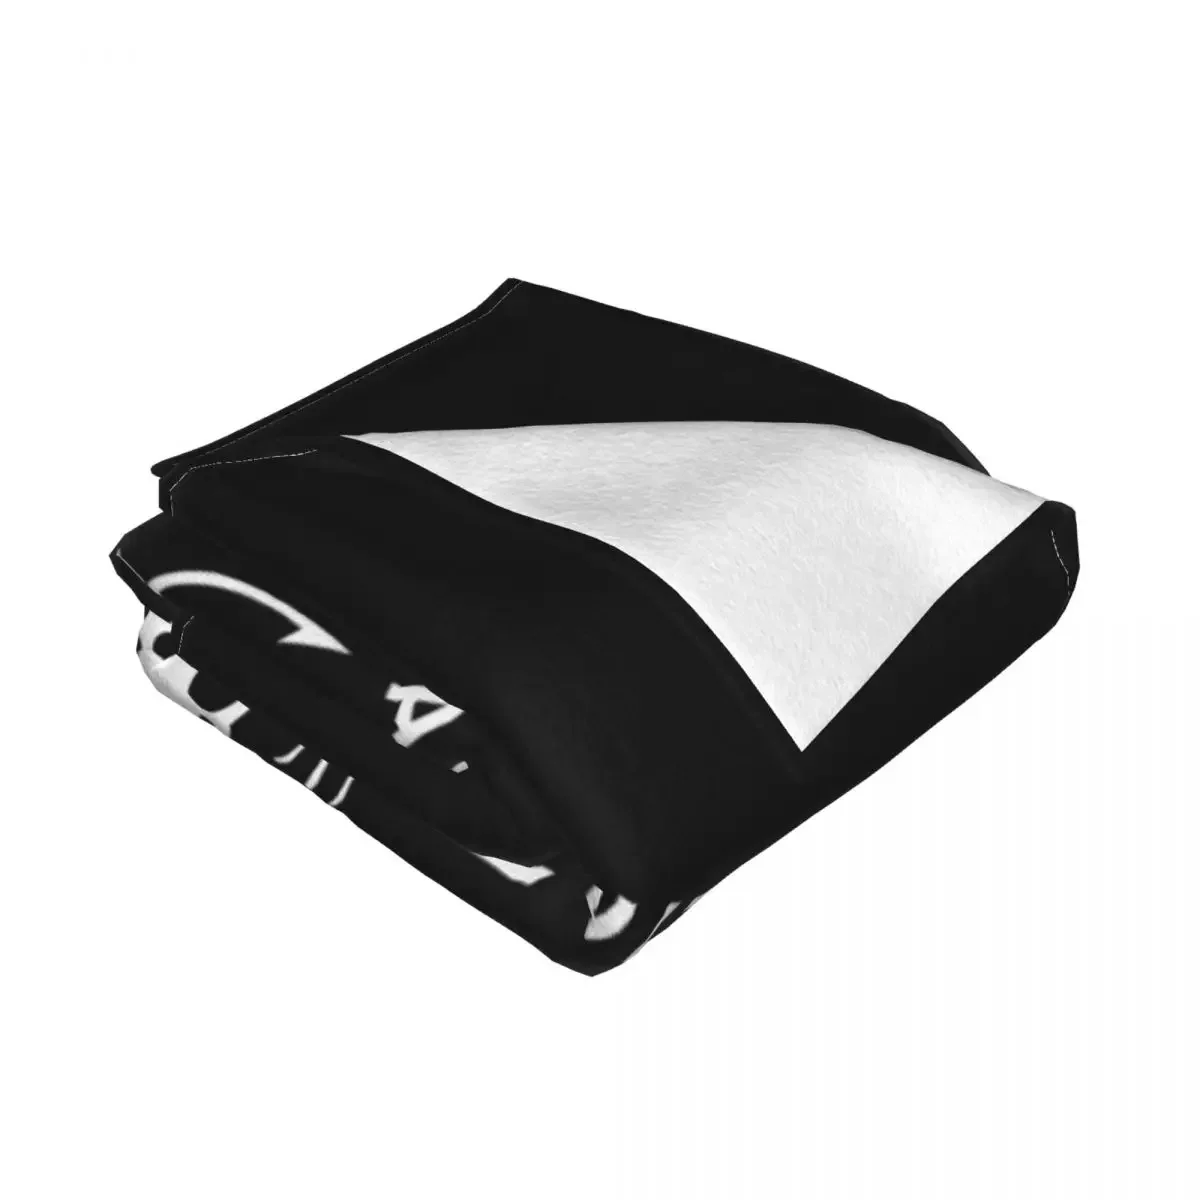 Роскошное одеяло Navy Seal Bonefrog Udt Frogman для кровати, всесезонные постельные принадлежности, декоративные накидки на диван